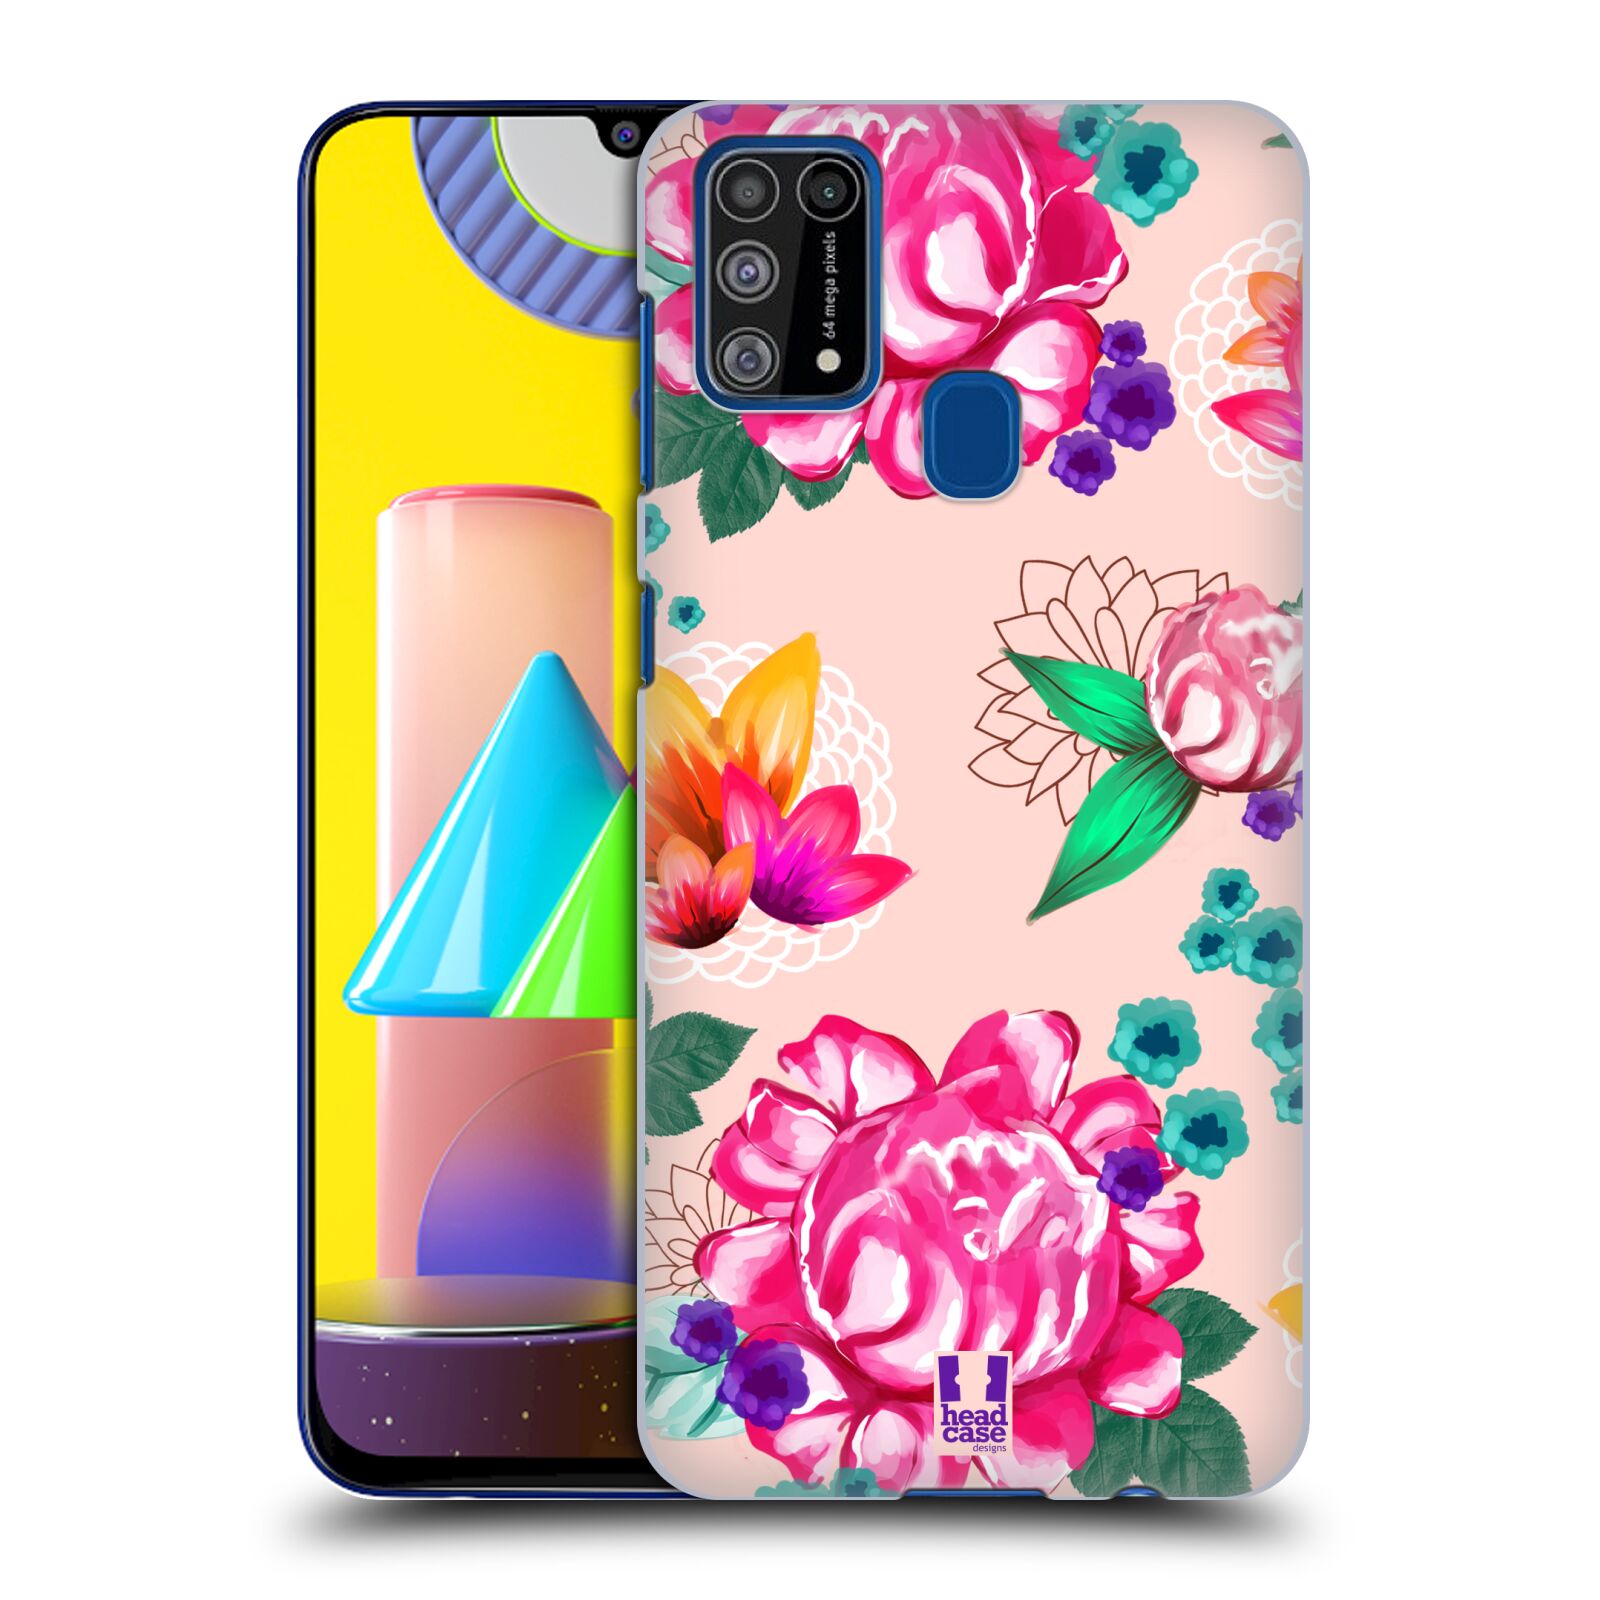 Plastový obal HEAD CASE na mobil Samsung Galaxy M31 vzor Malované květiny barevné SVĚTLE RŮŽOVÁ